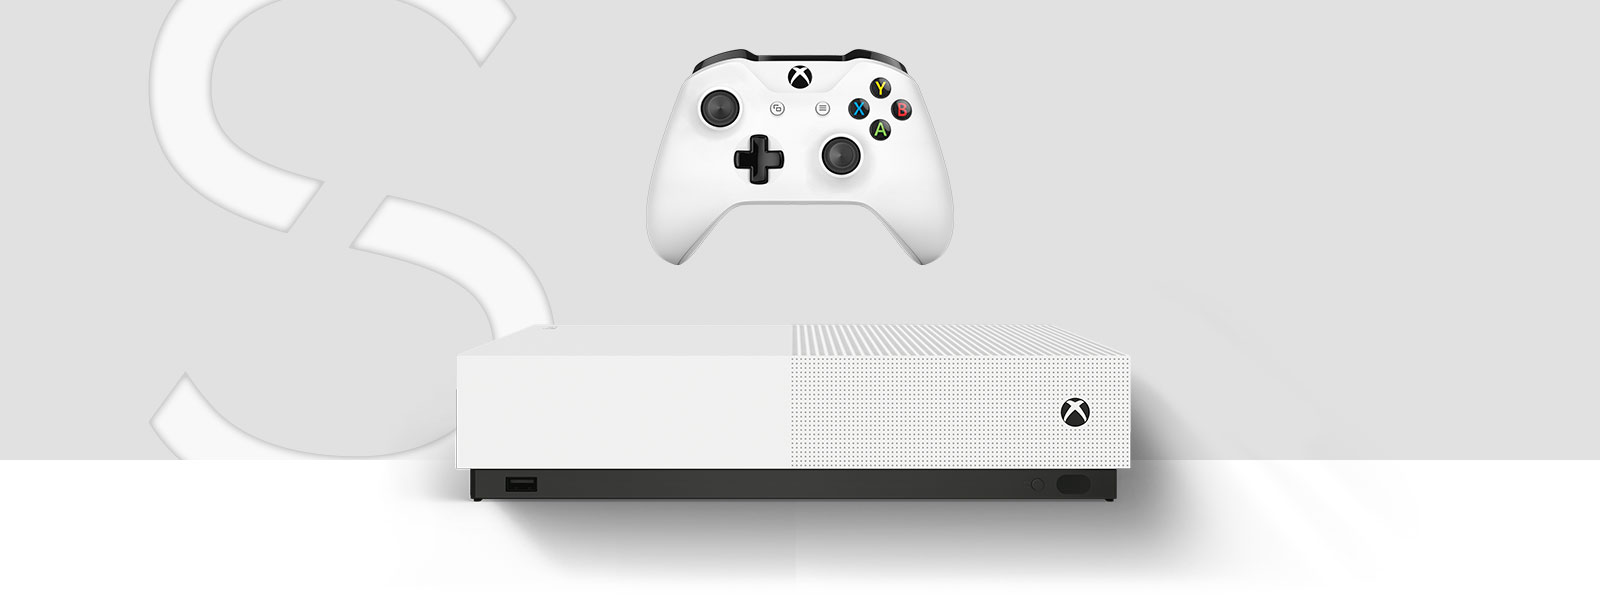 一台 Xbox One S All-Digital Edition 主机的正视图，位于一个巨大的艺术字 S 前方